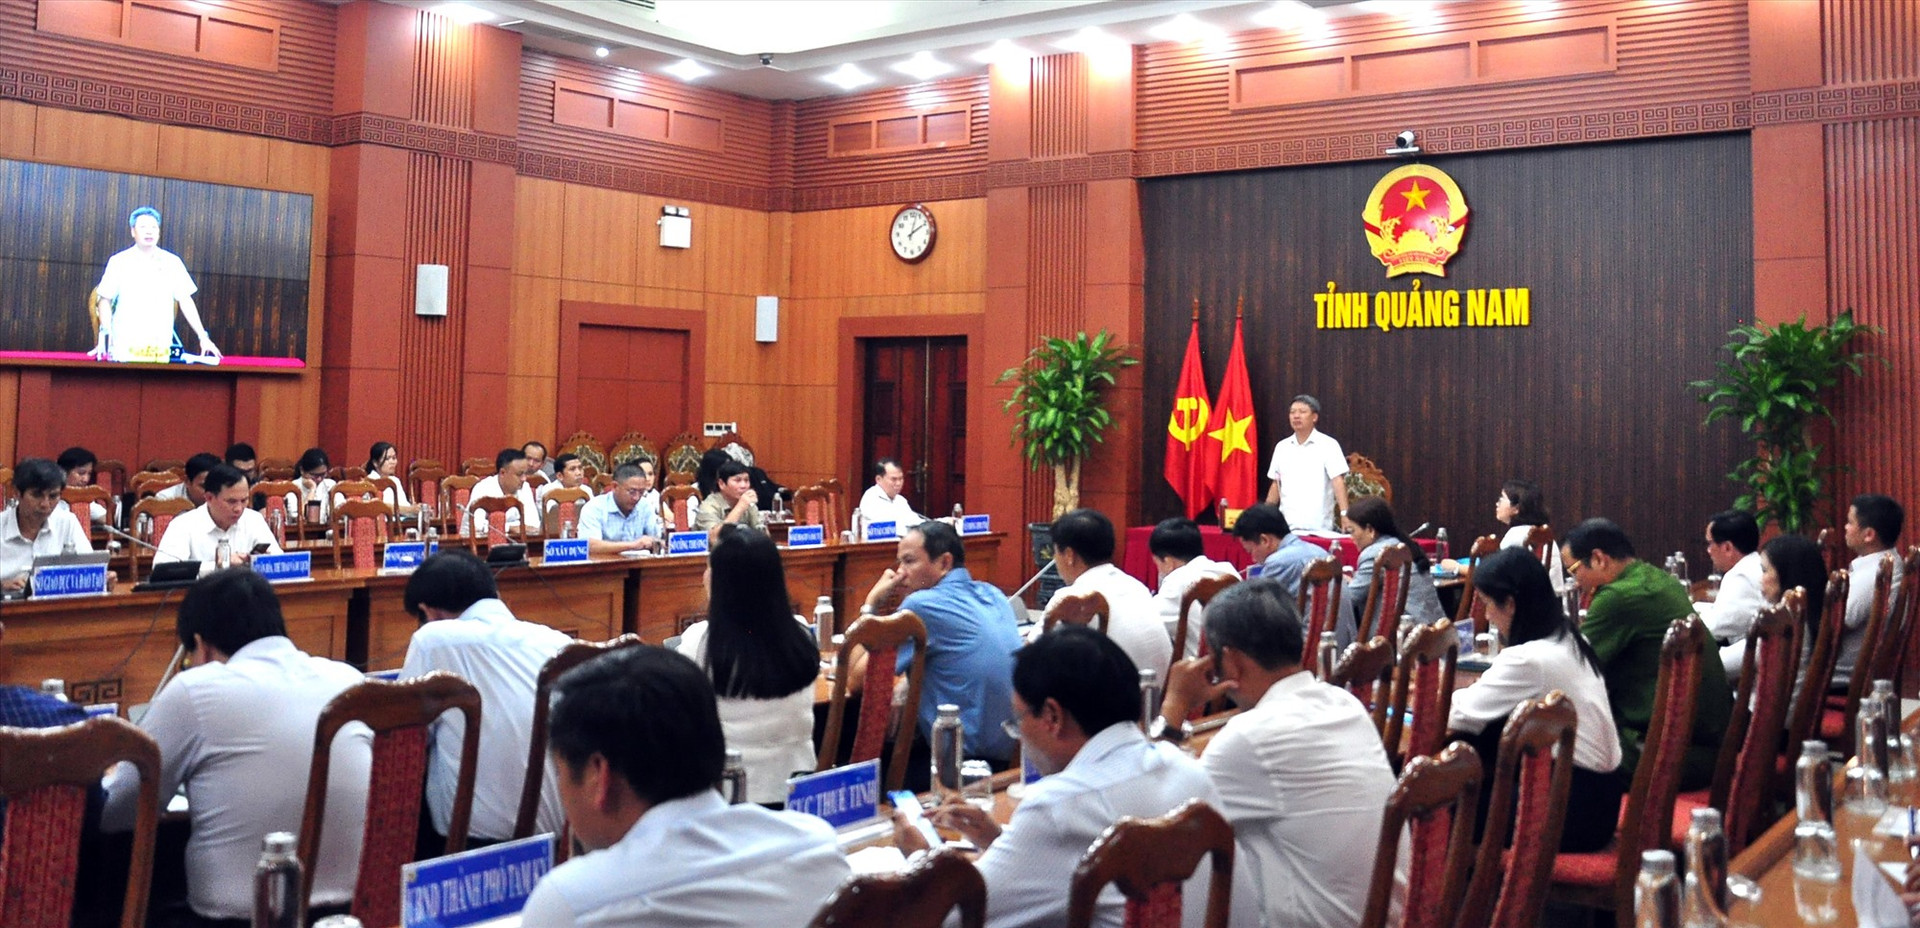 Phó Chủ tịch UBND tỉnh Hồ Quang Bửu chủ trì hội nghị đánh giá kết quả thực hiện cơ chế một cửa, một cửa liên thông trên địa bàn tỉnh. Ảnh: GIANG ĐÔNG